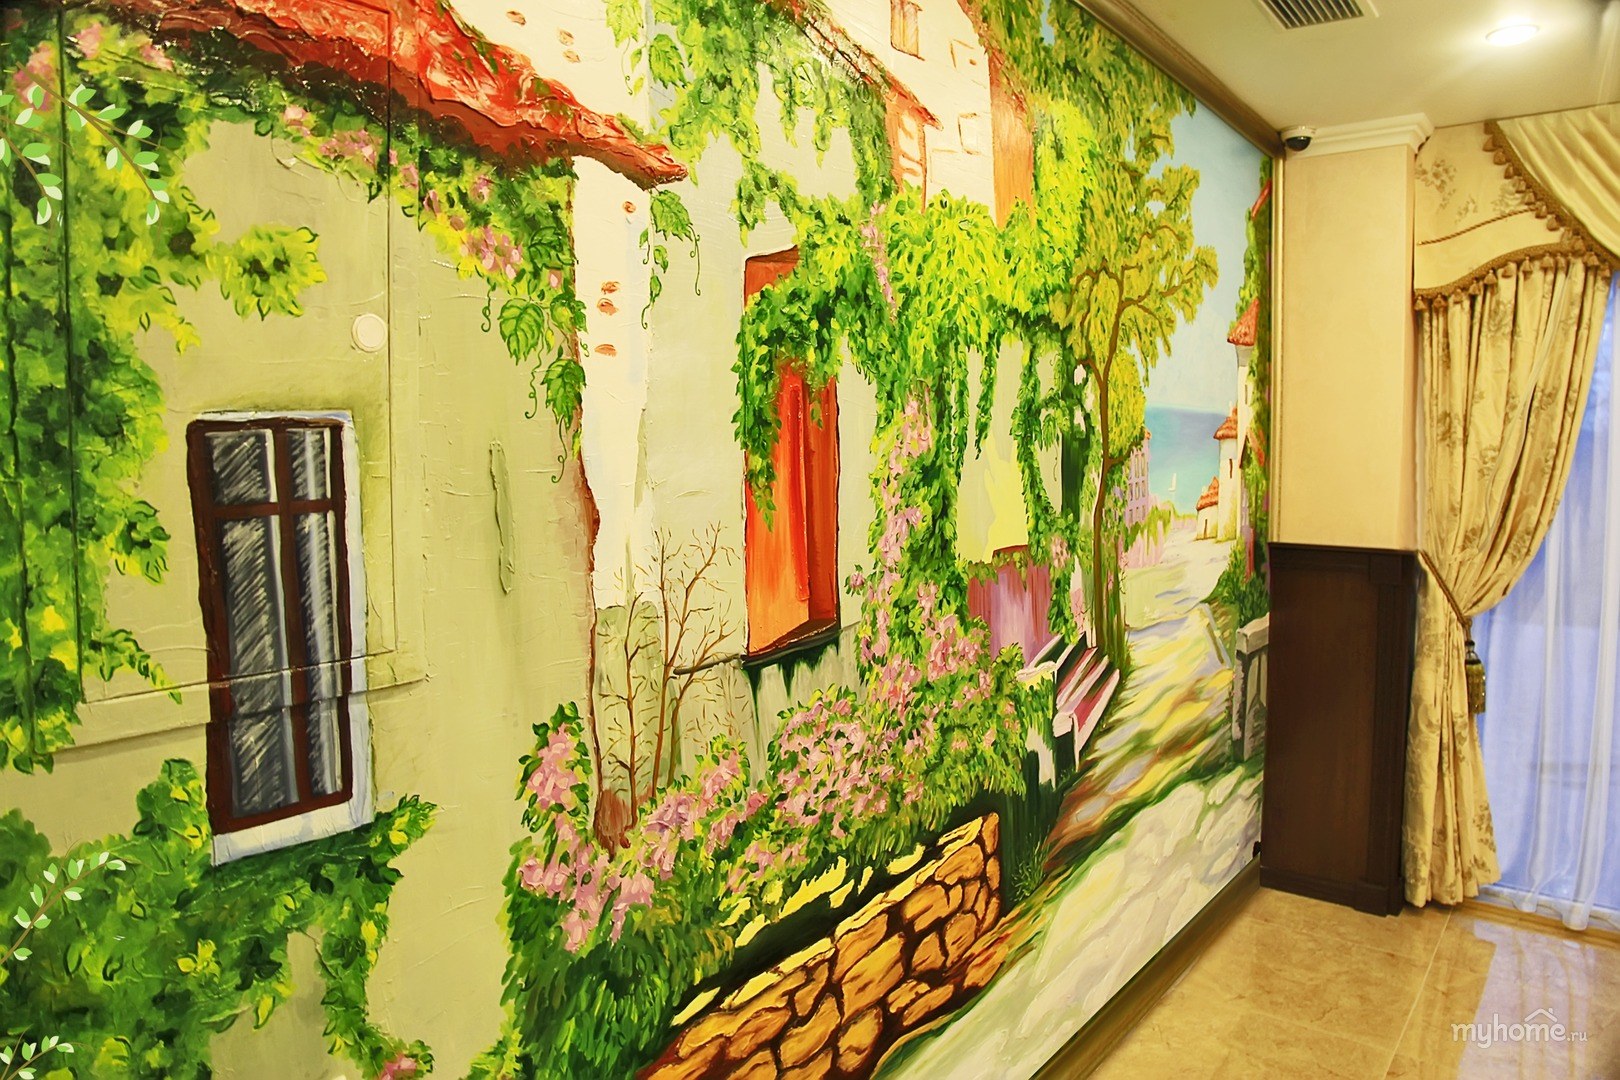 Разрисованные стены в квартире